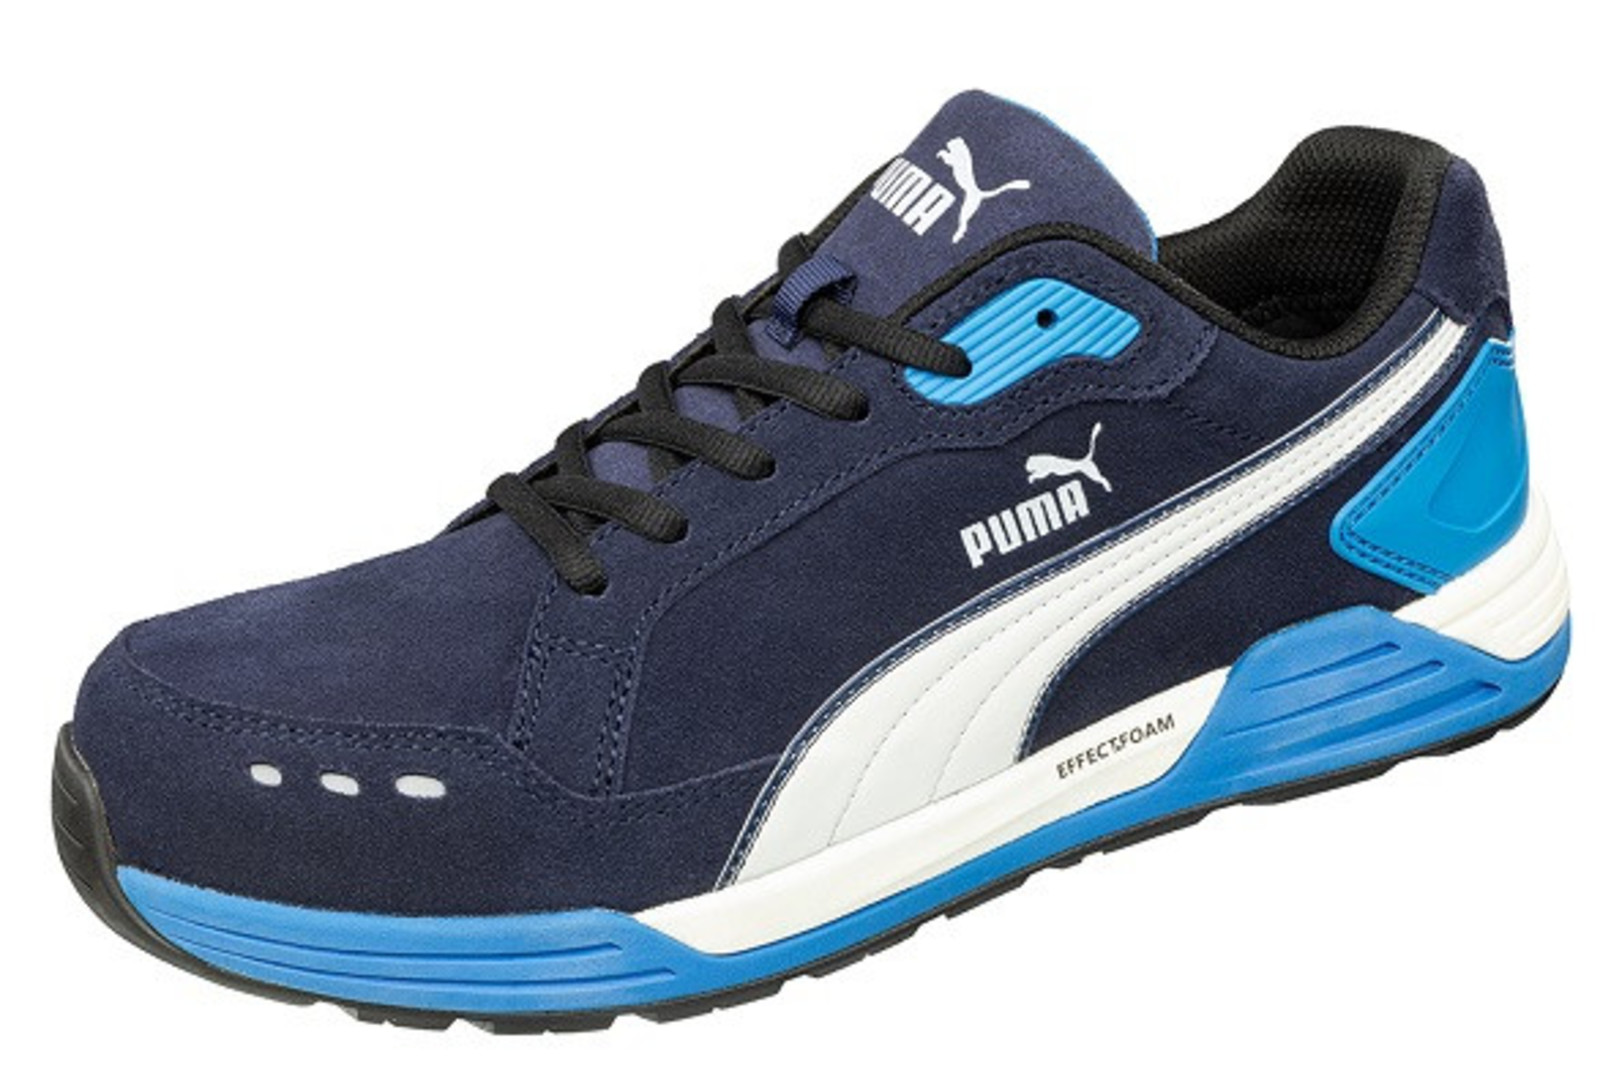 Bezpečnostná obuv Puma Airtwist S3 - veľkosť: 39, farba: modrá